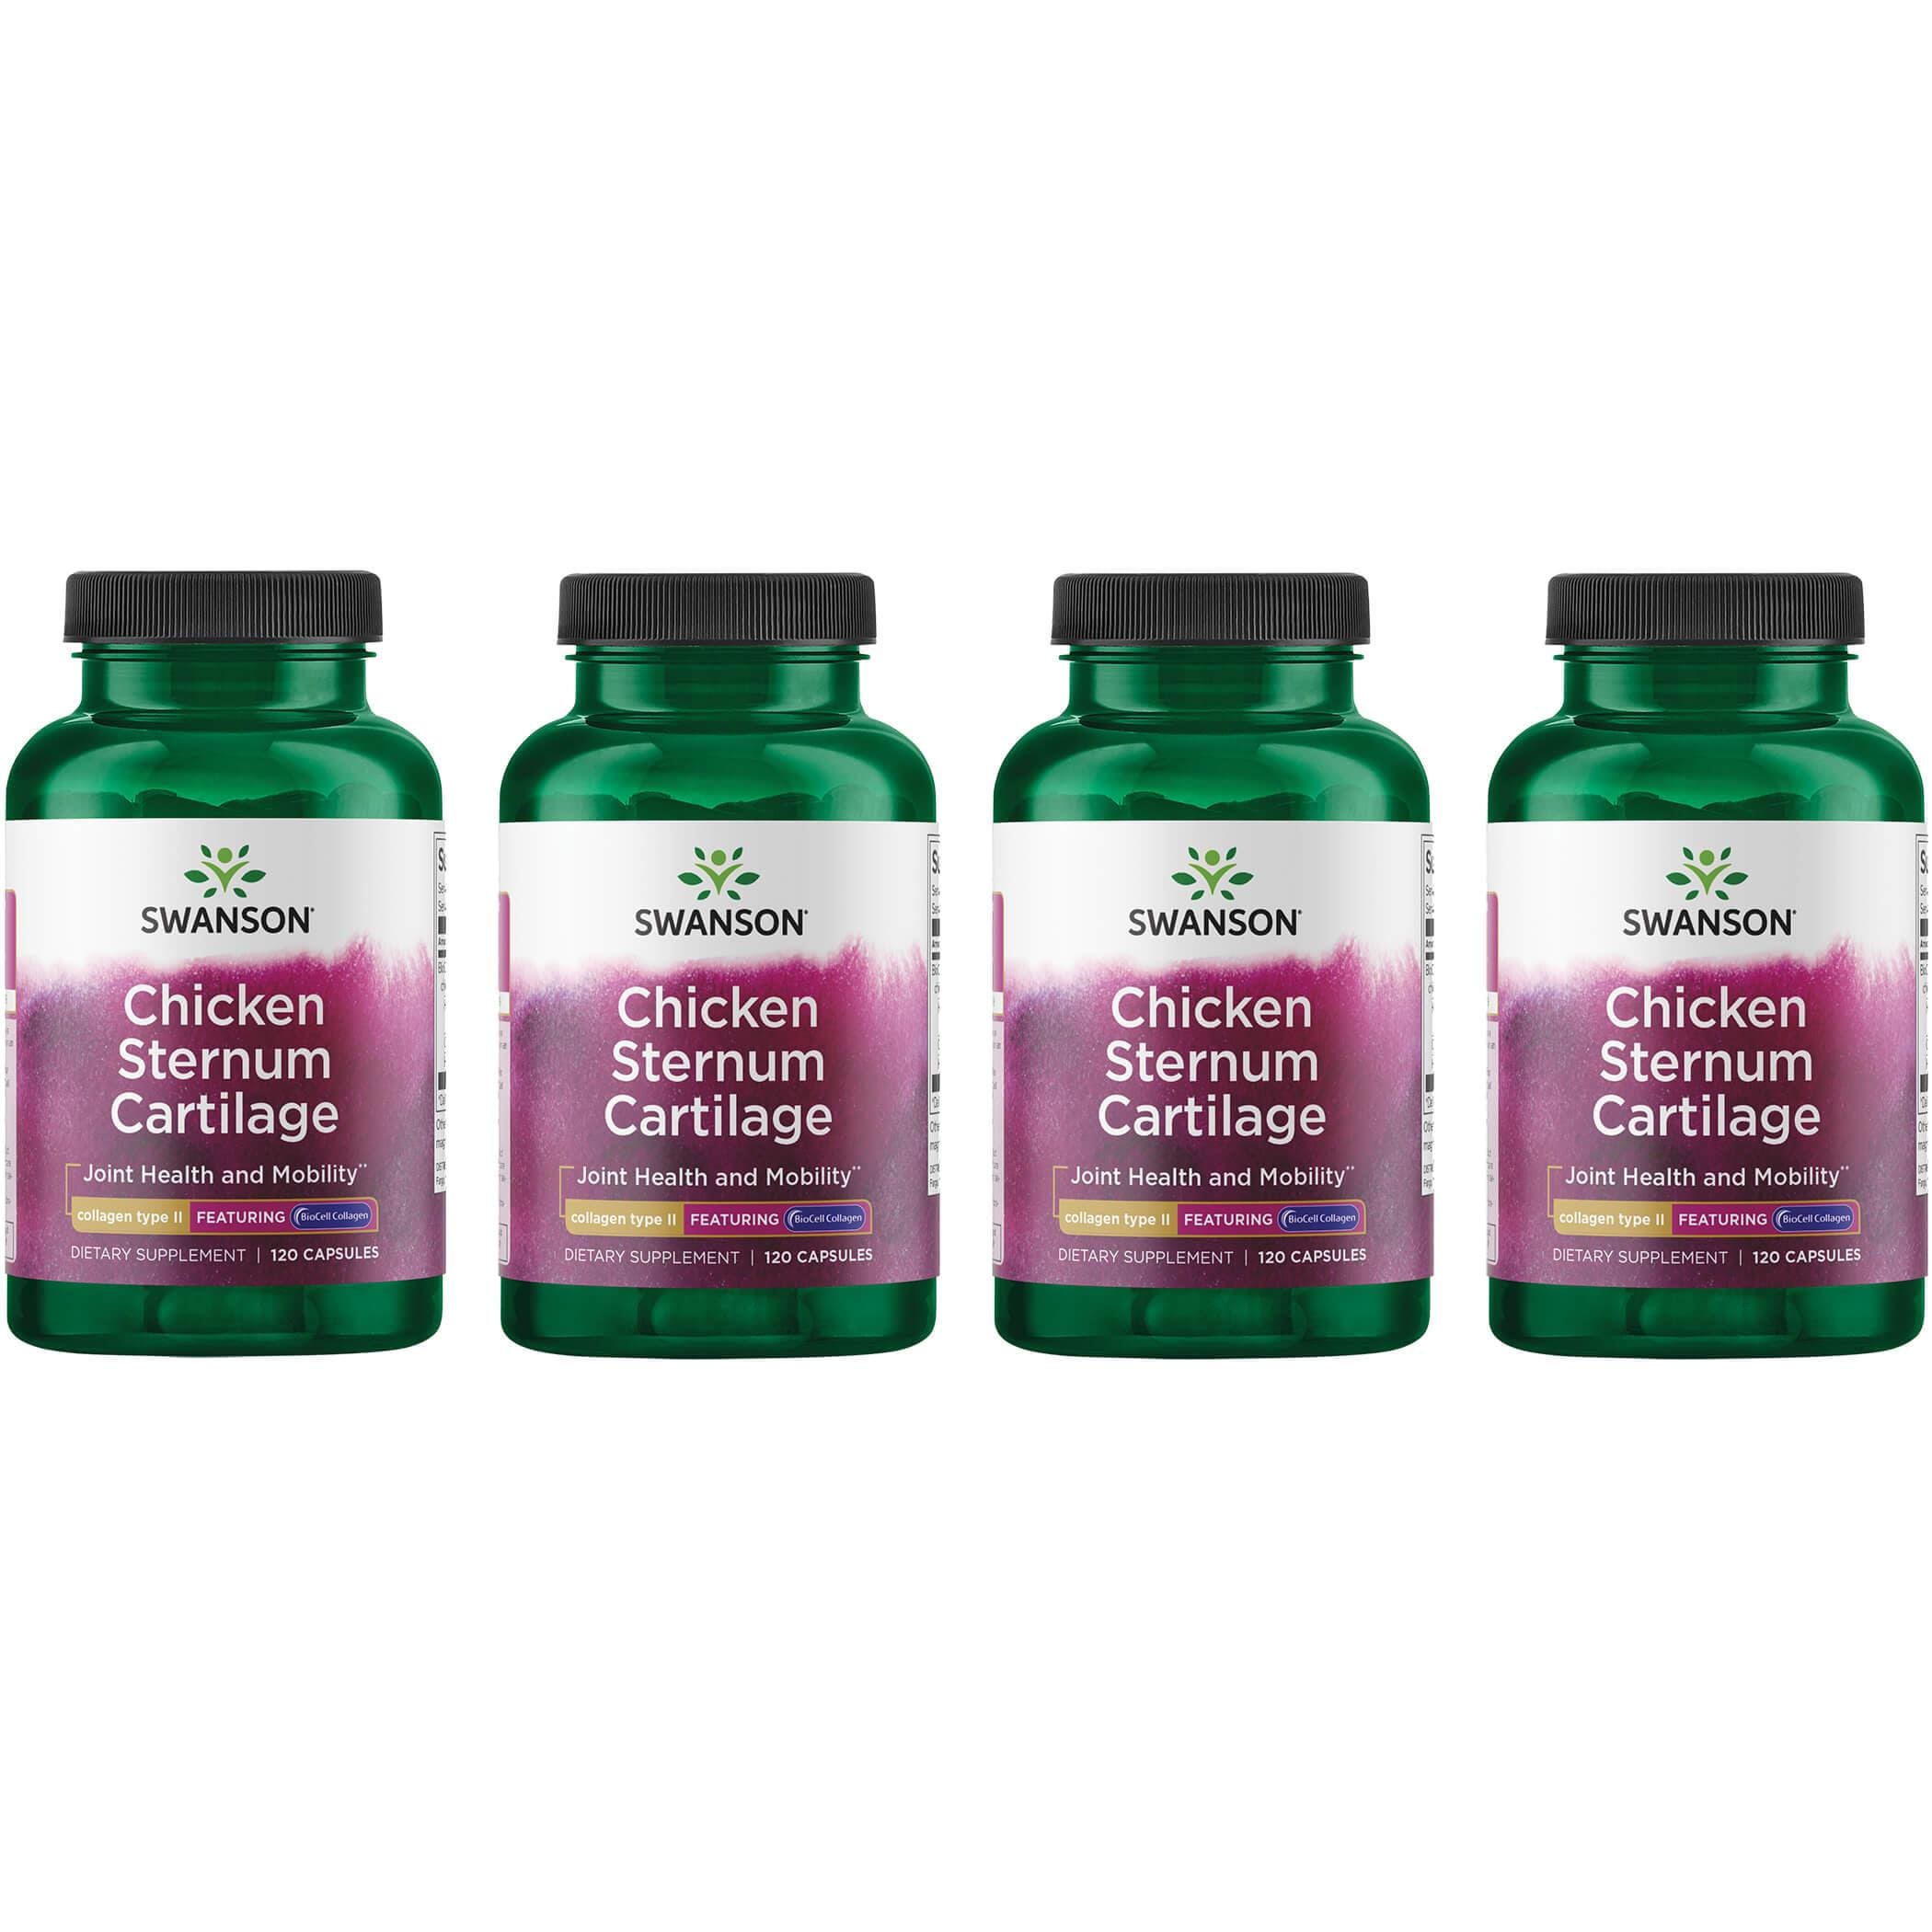 Swanson Premium Chicken Sternum Cartilage - Collagen Type Ii 4 Pack Supplement Vitamin 500 mg 120 Caps